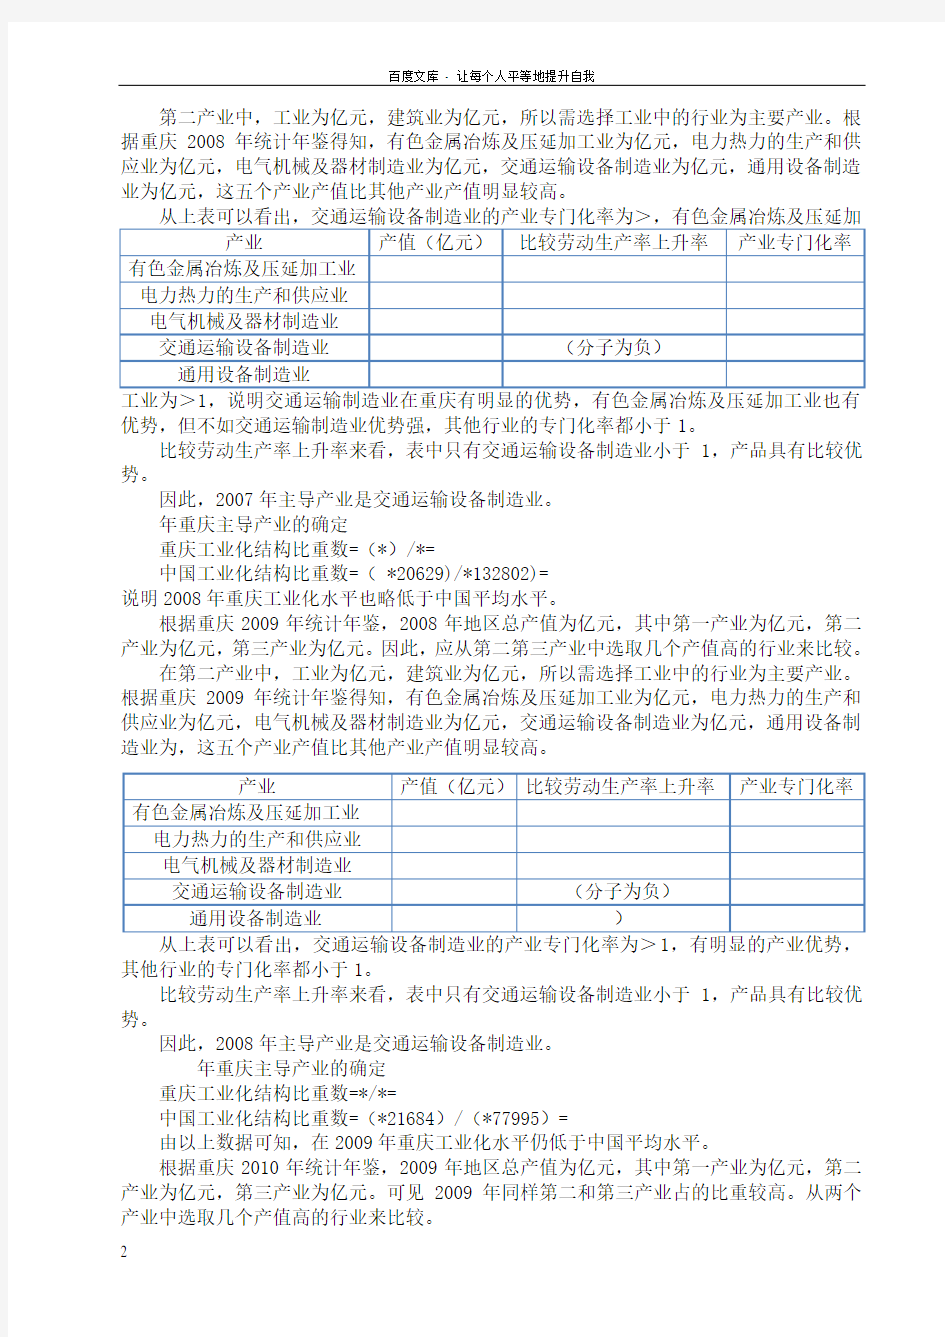 重庆市主导产业的分析